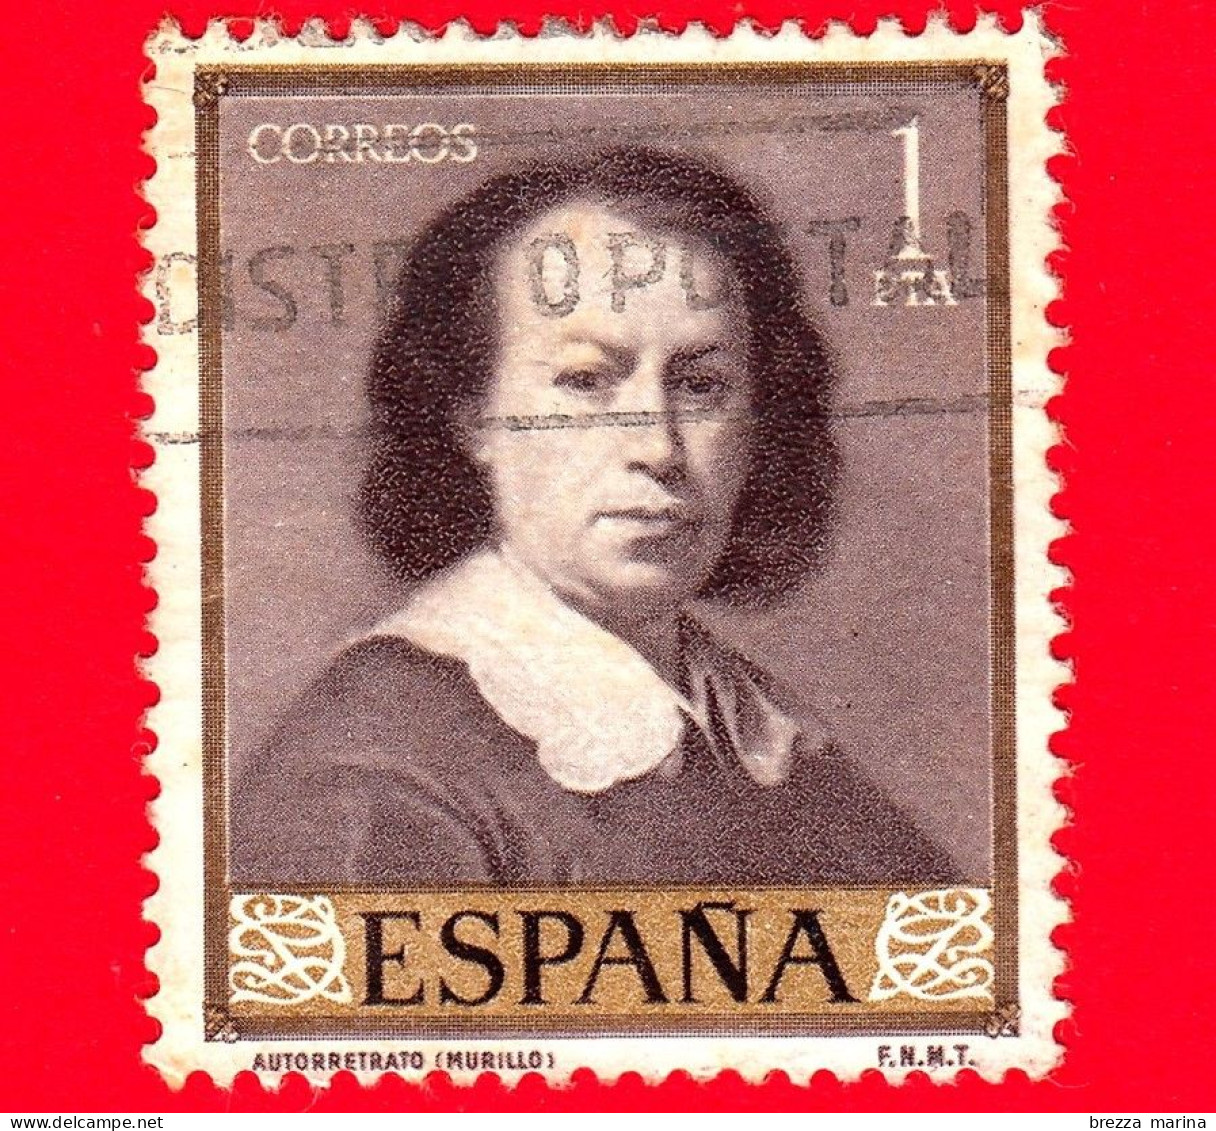 SPAGNA  - Usato - 1960 - Giornata Del Francobollo - Dipinti Di Bartolomé Esteban Murillo - Autoritratto - 1 - Used Stamps